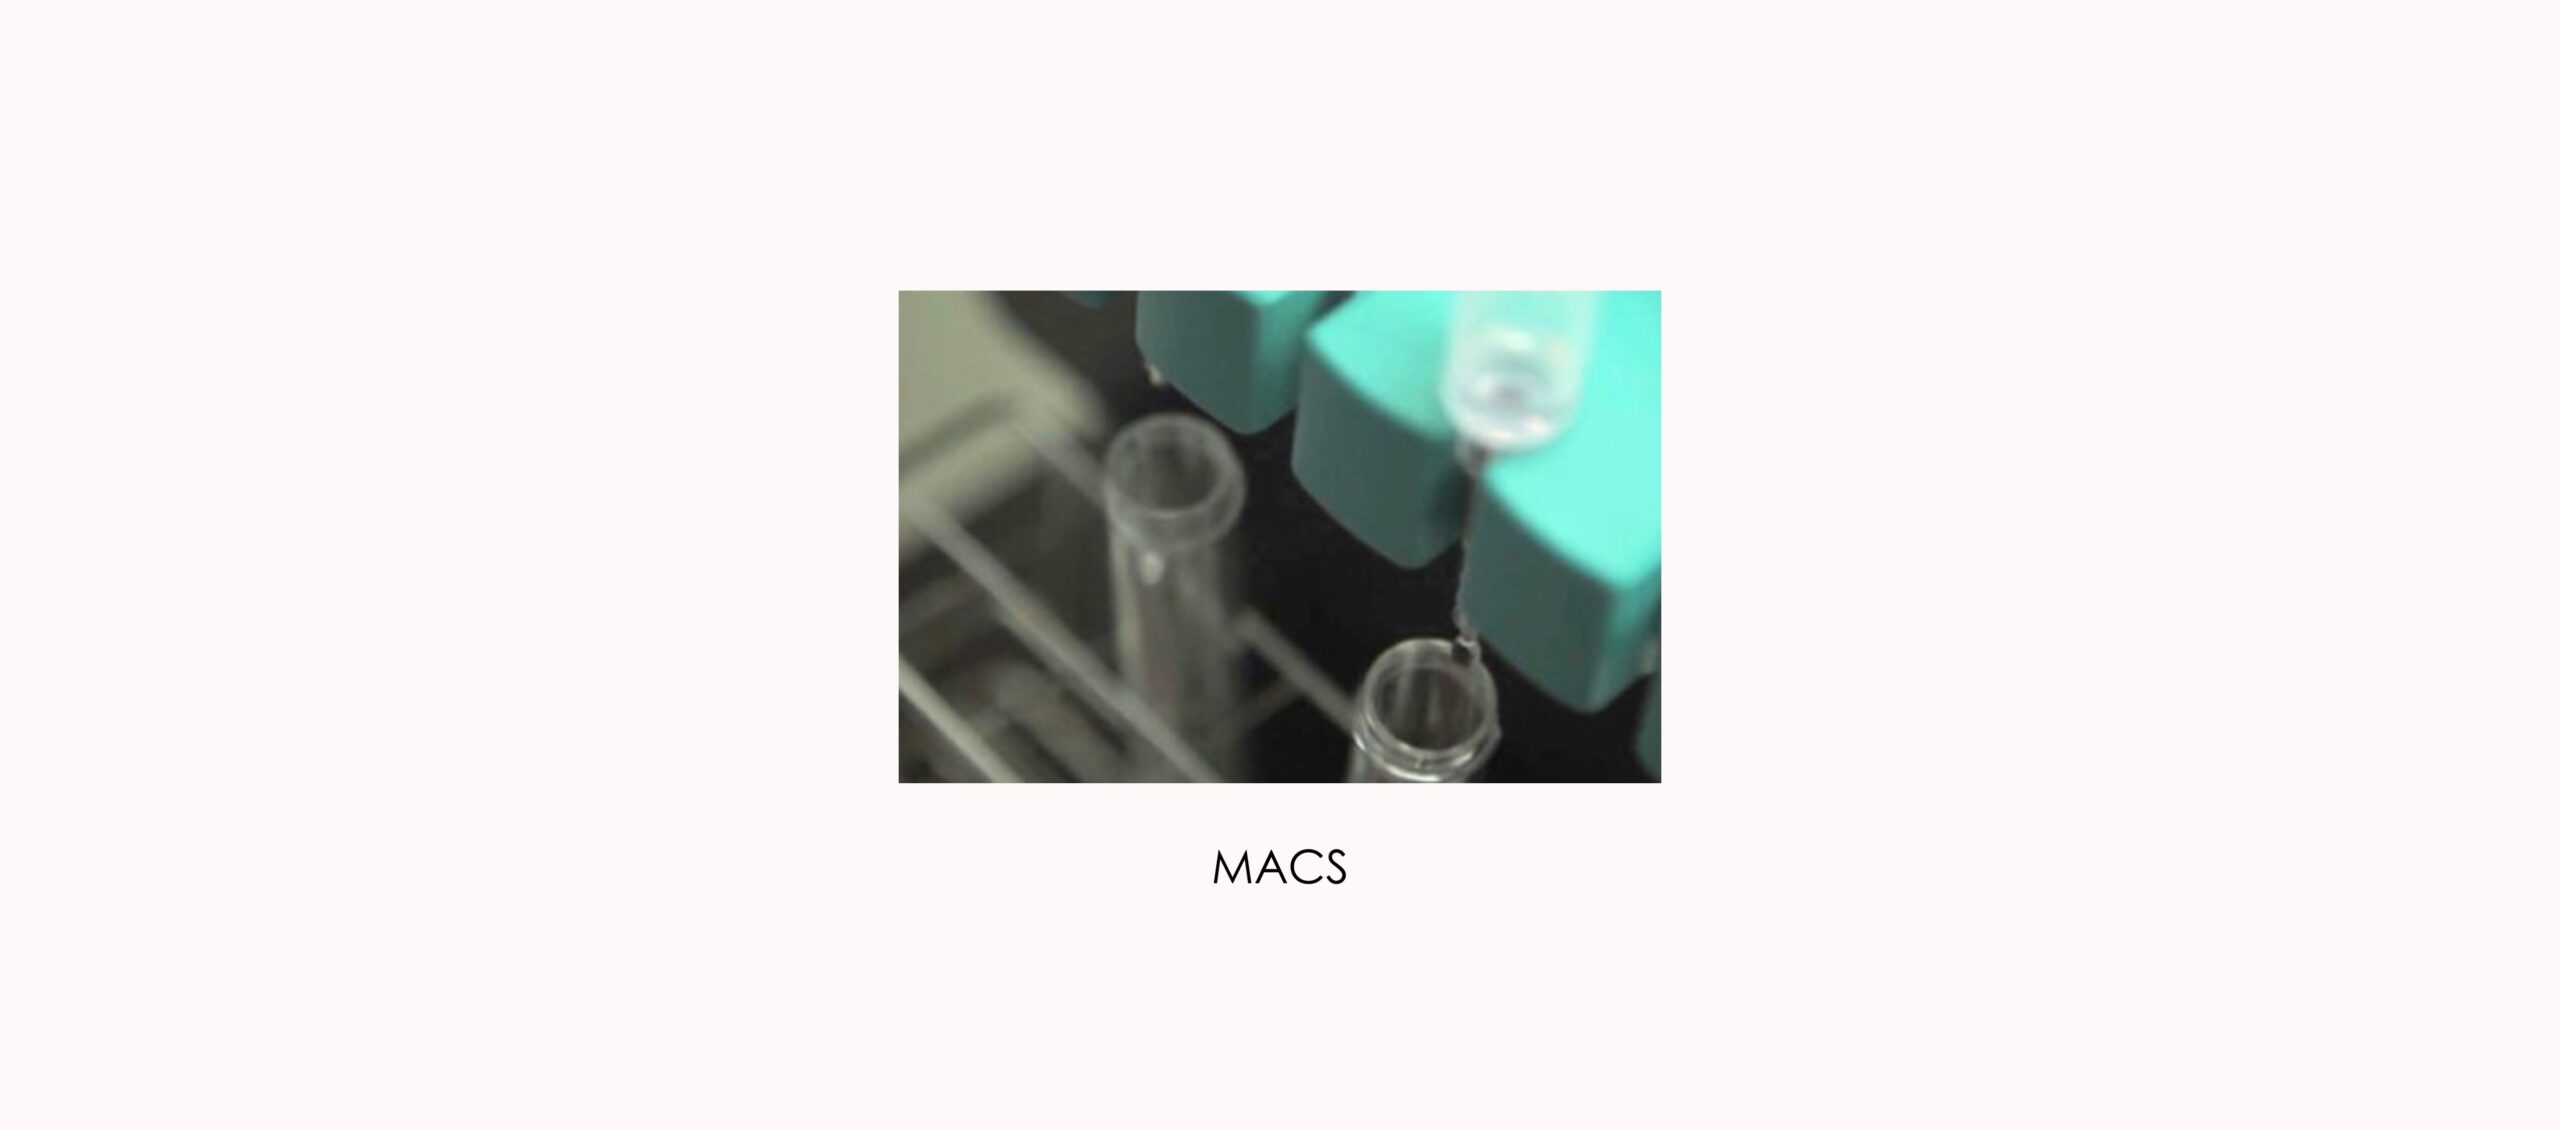 Técnica de selección espermática MACS